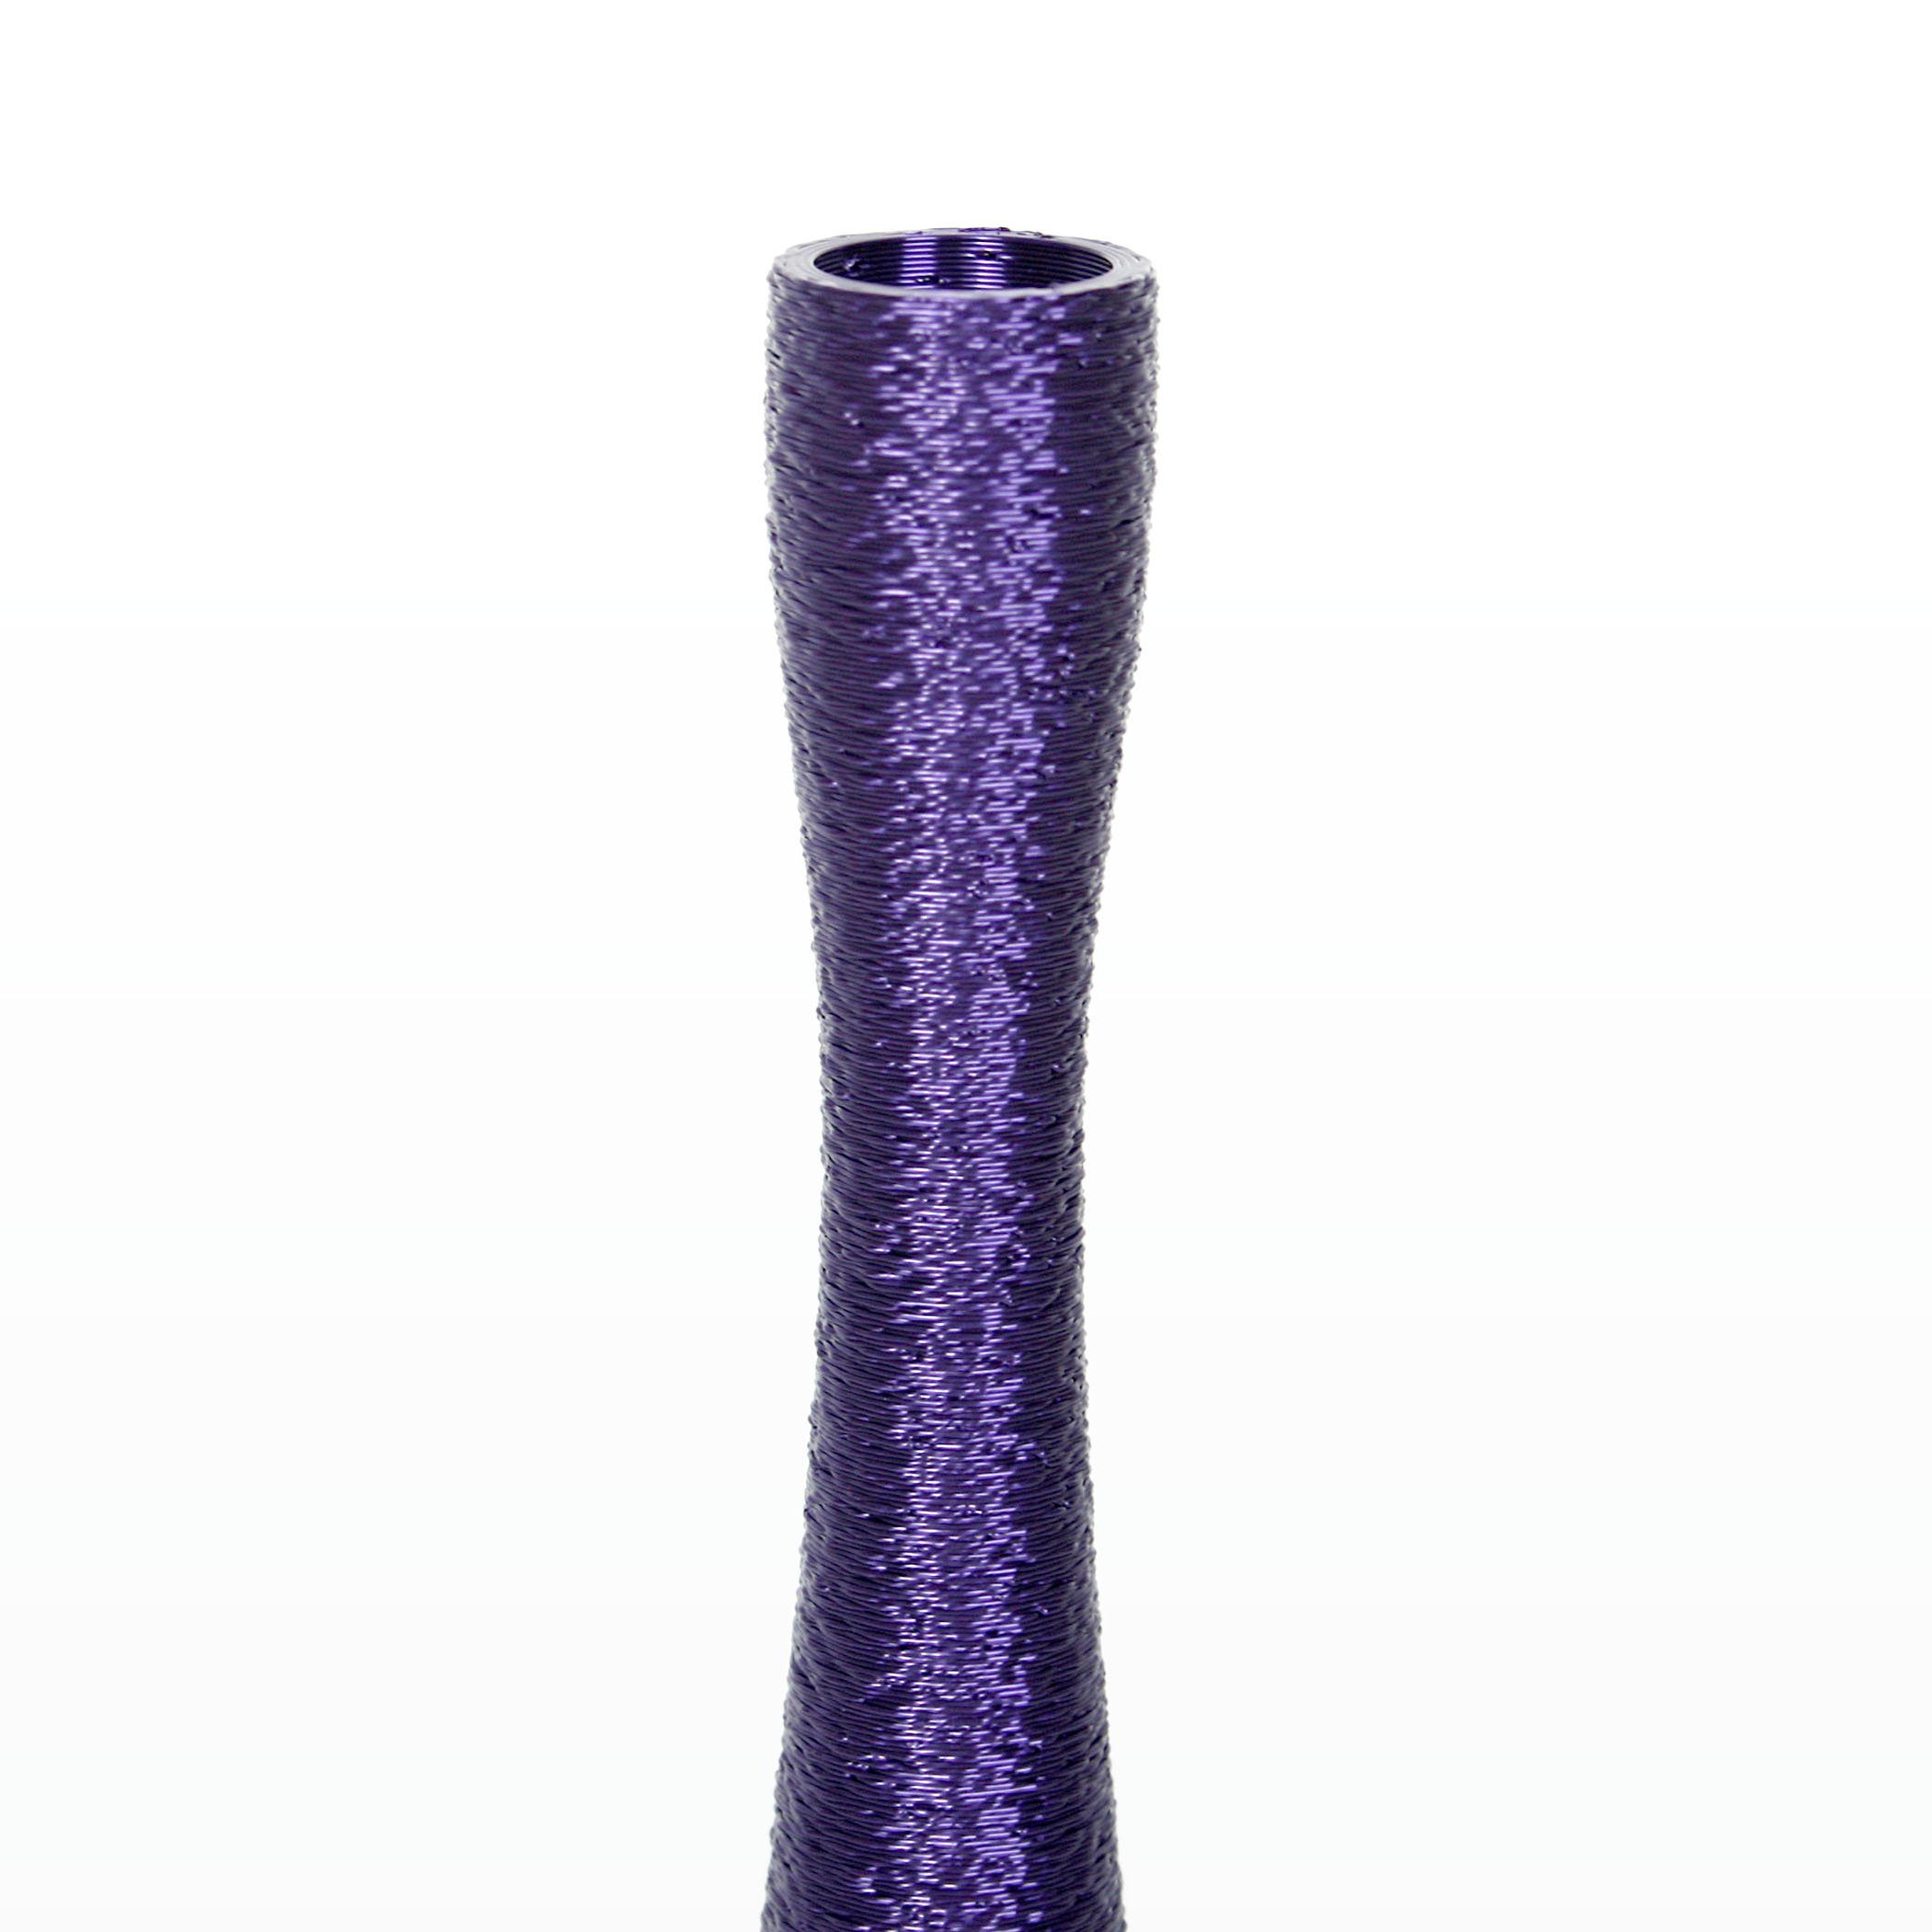 Kreative Feder Dekovase – Bio-Kunststoff, aus Rohstoffen; Violet Blumenvase aus & nachwachsenden Vase wasserdicht Designer Dekorative bruchsicher